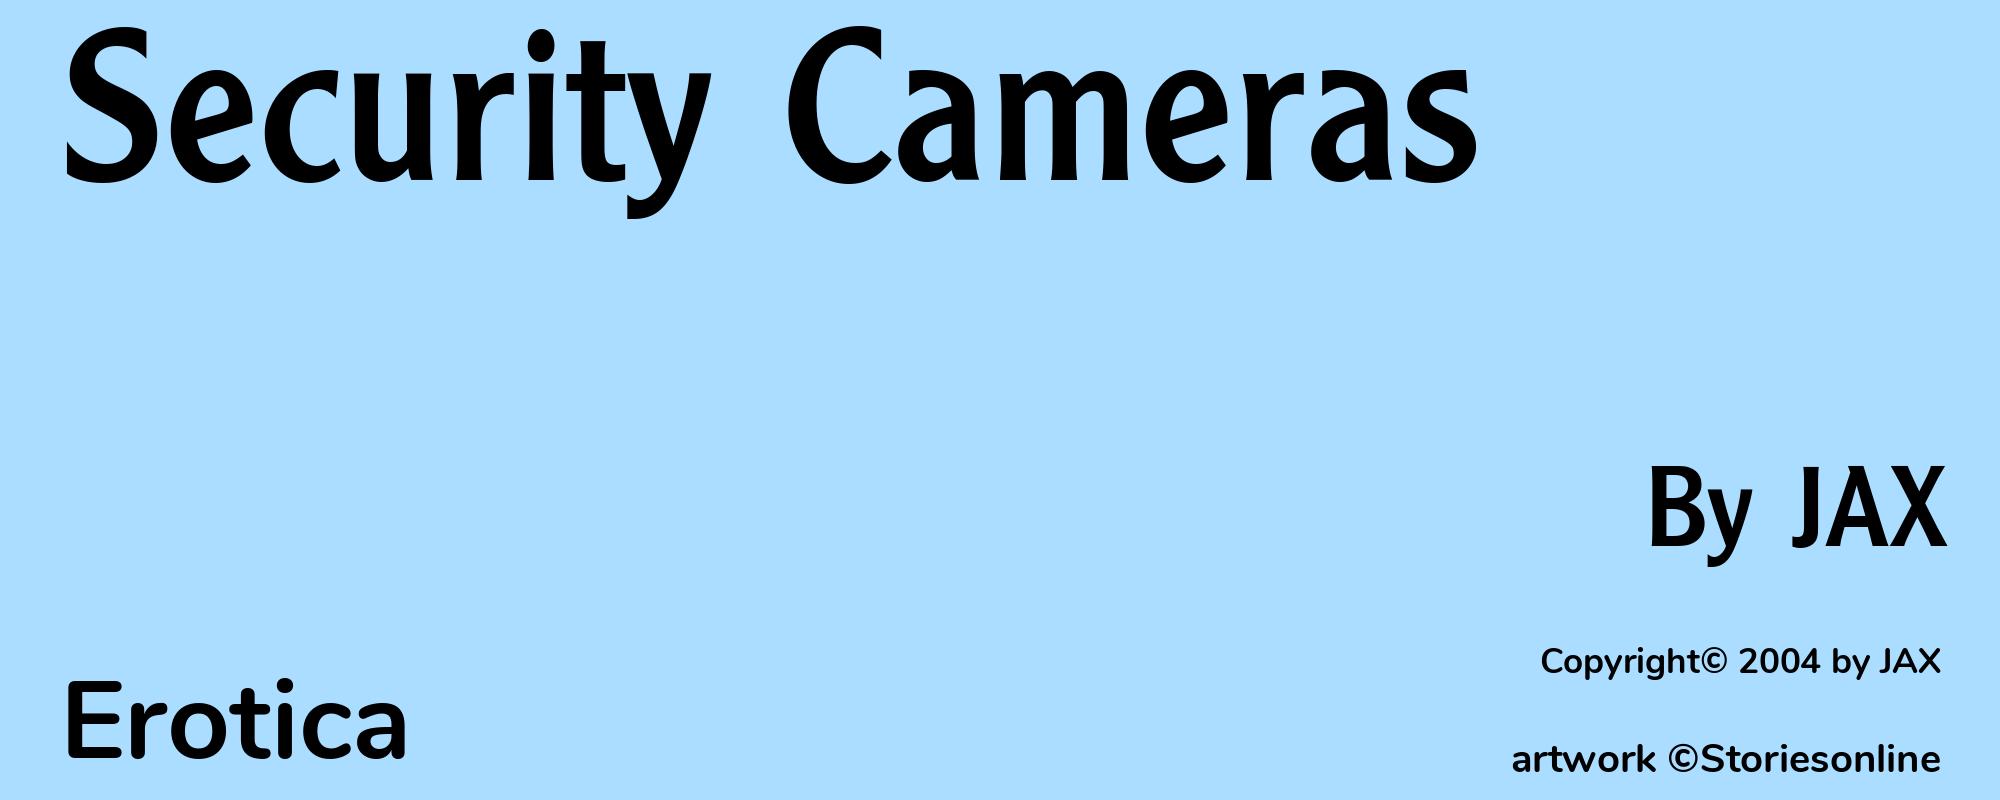 Security Cameras - Cover